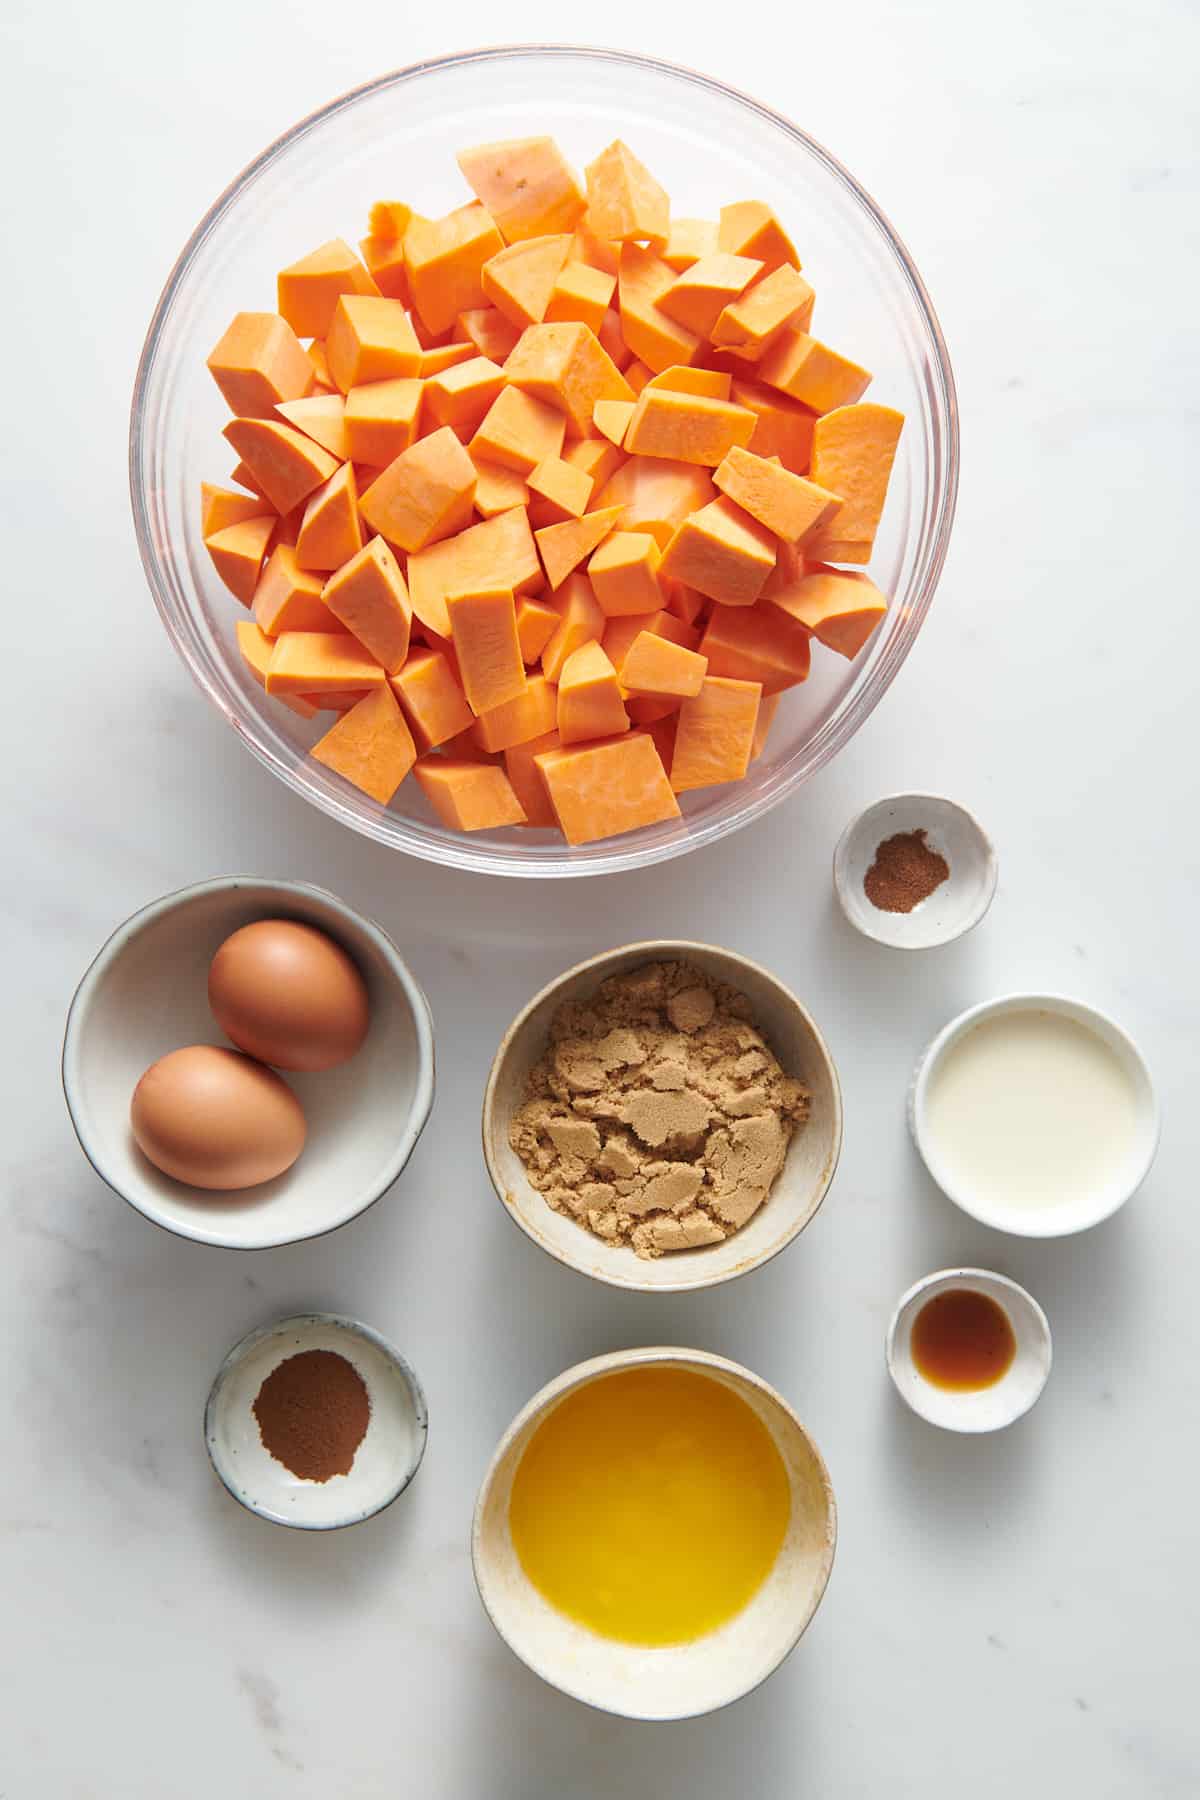 ingredients to make paula deen sweet potato casserole filling.